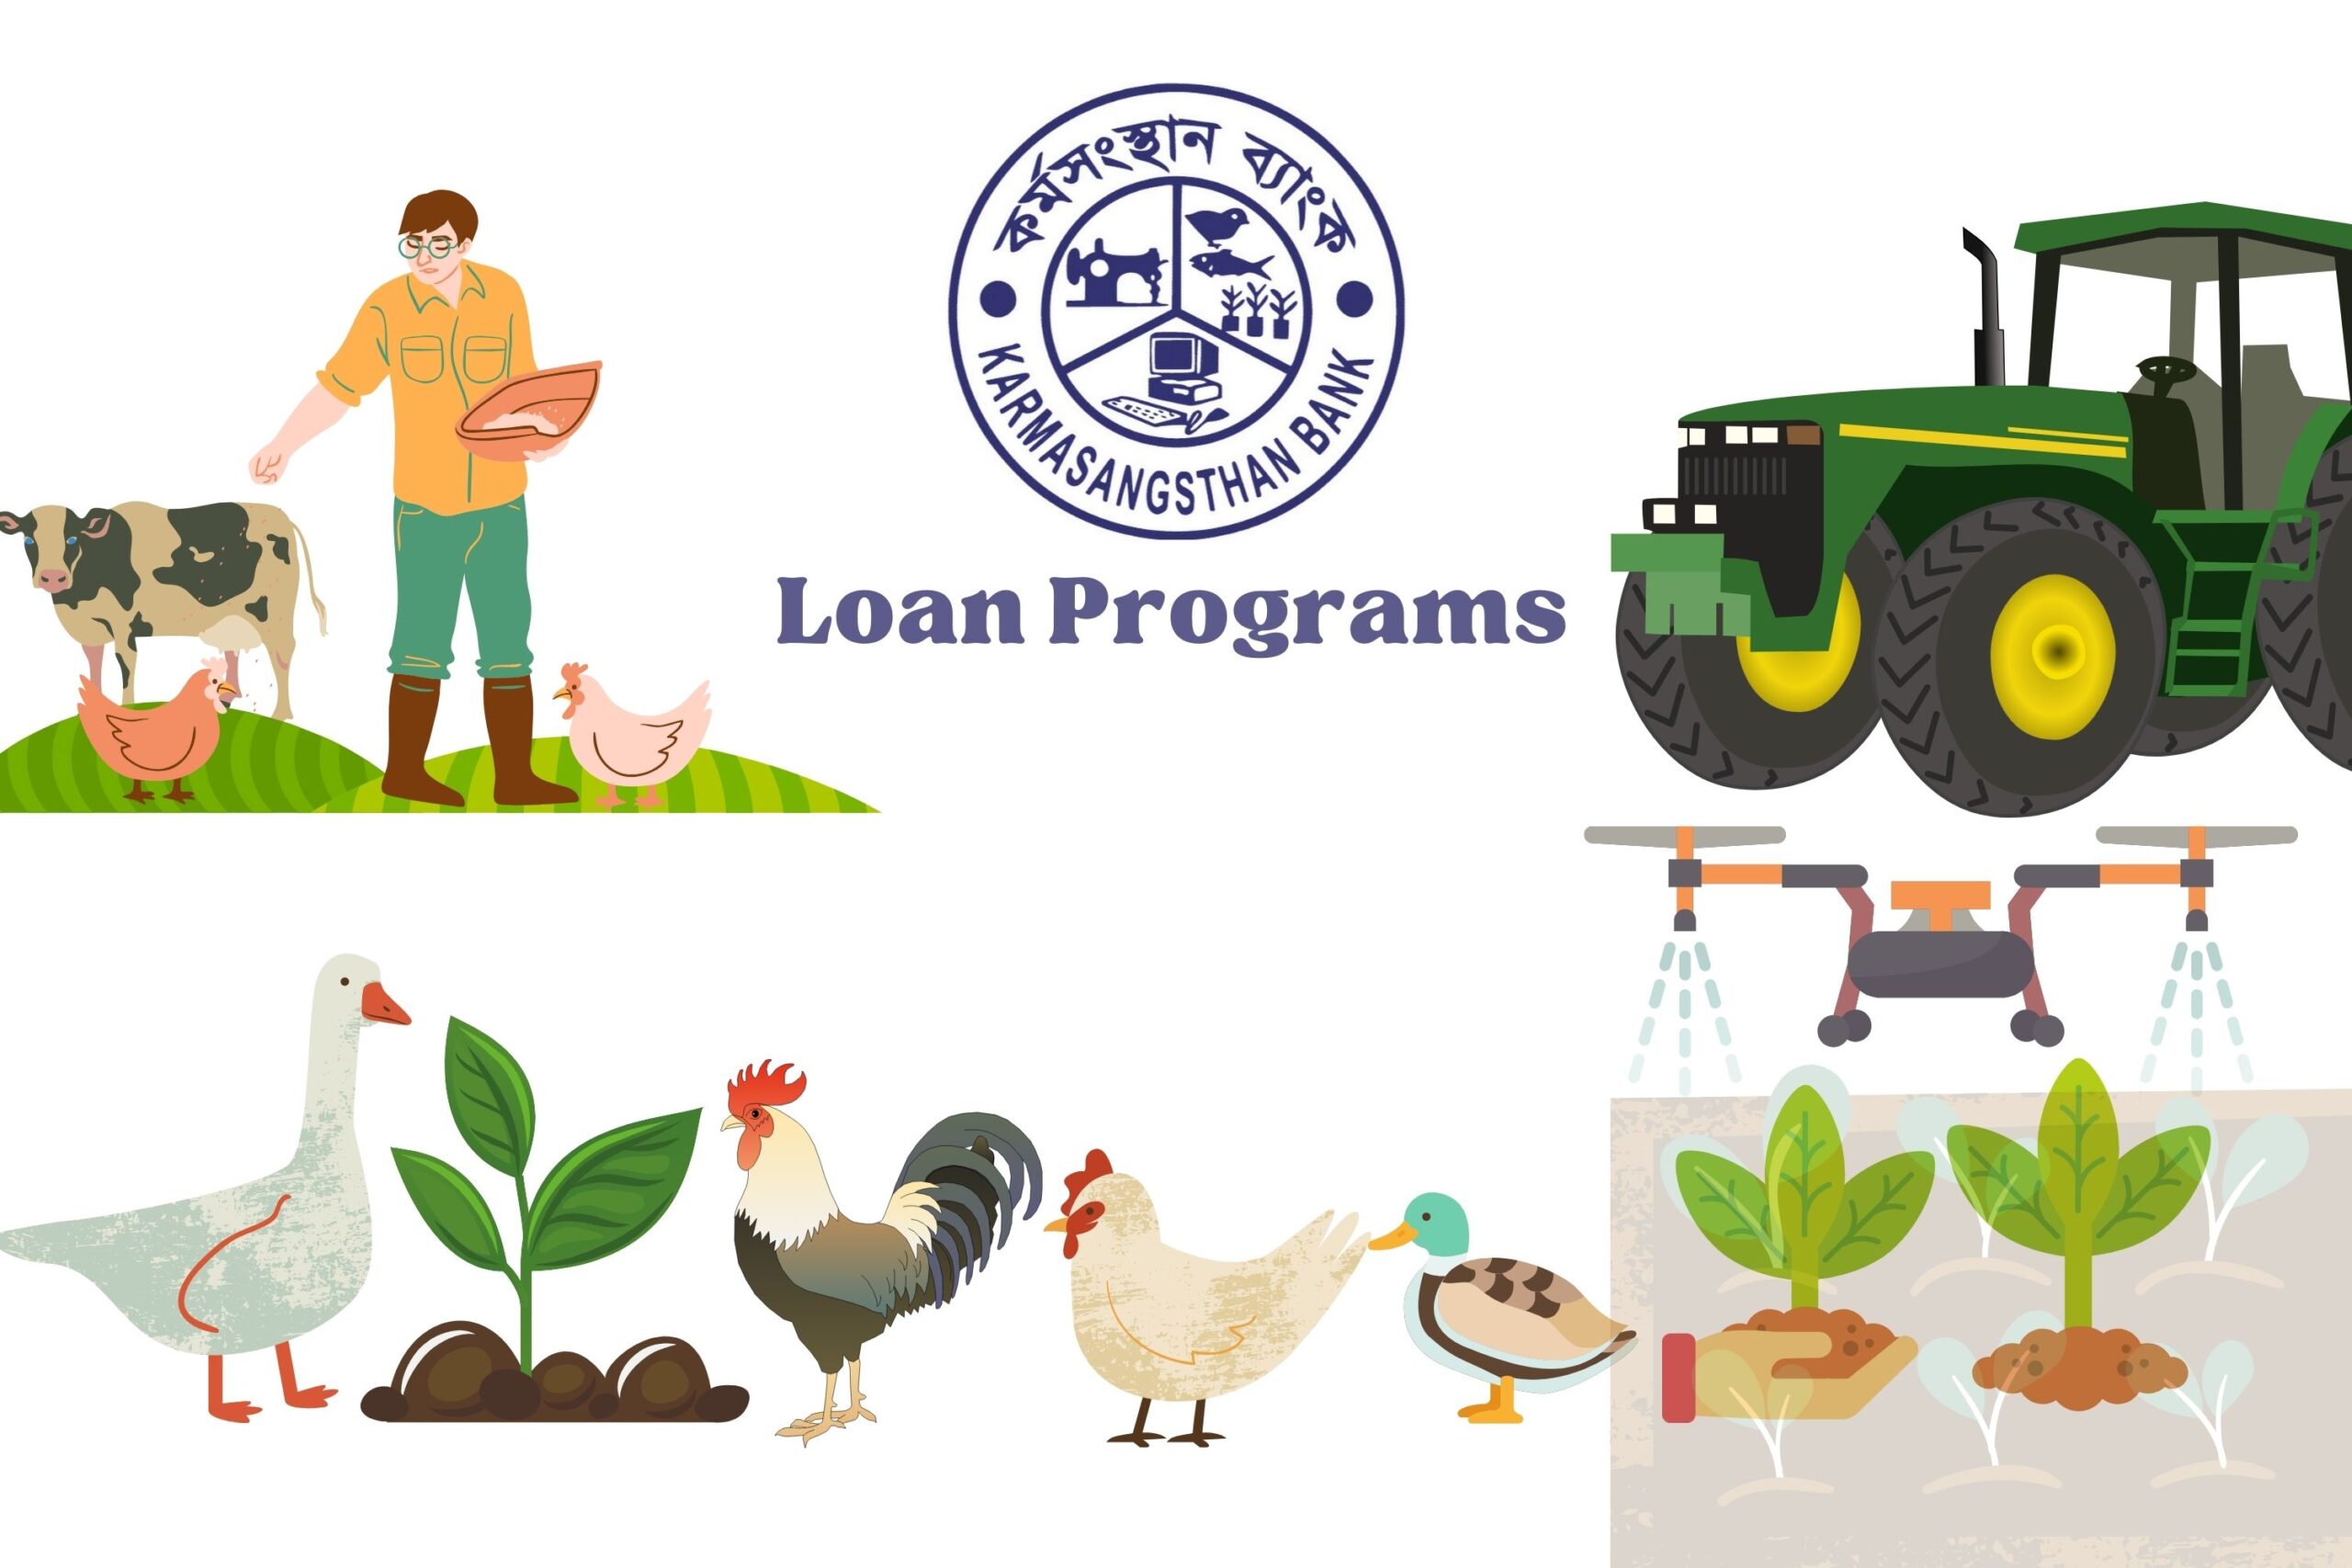 Karmasangstan Bank Loan Programs